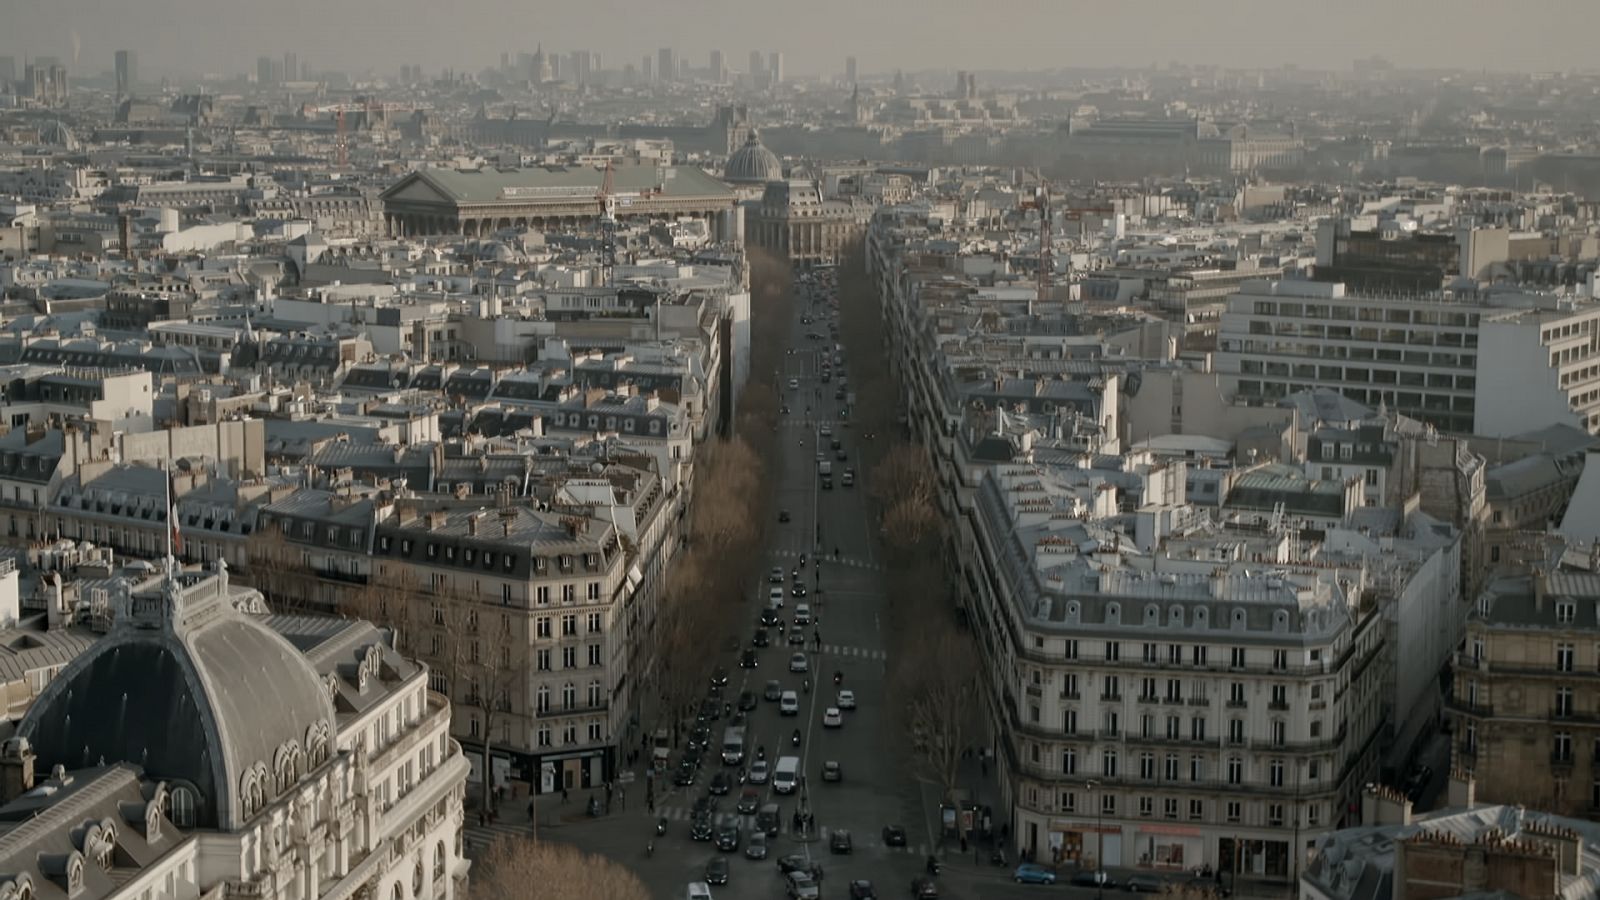 Megaestructuras legendarias: La increible transformación de París de Haussmann - Documental en RTVE